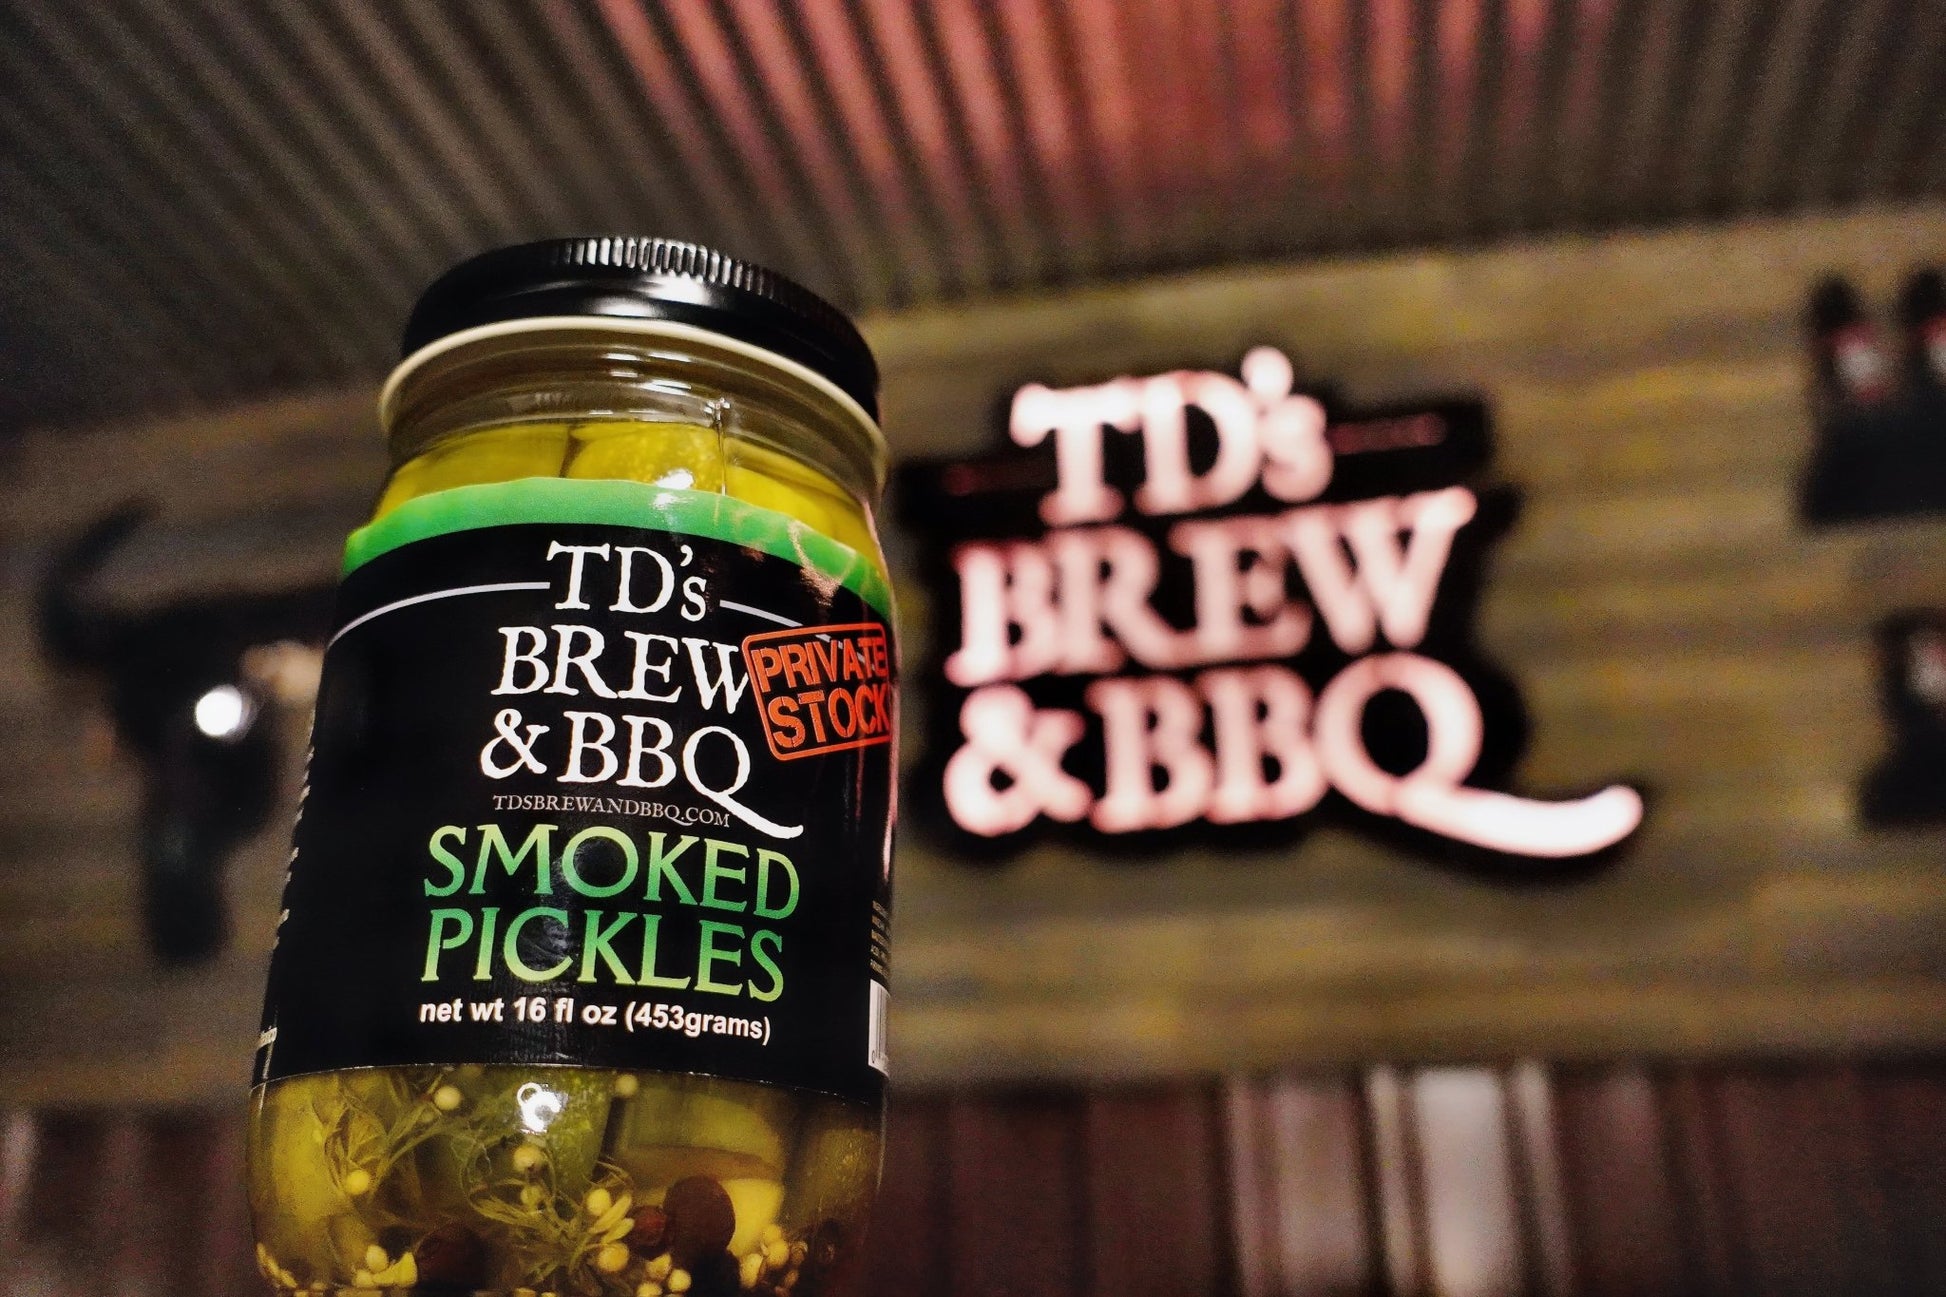 Smoked Pickles - tdsbrewandbbq